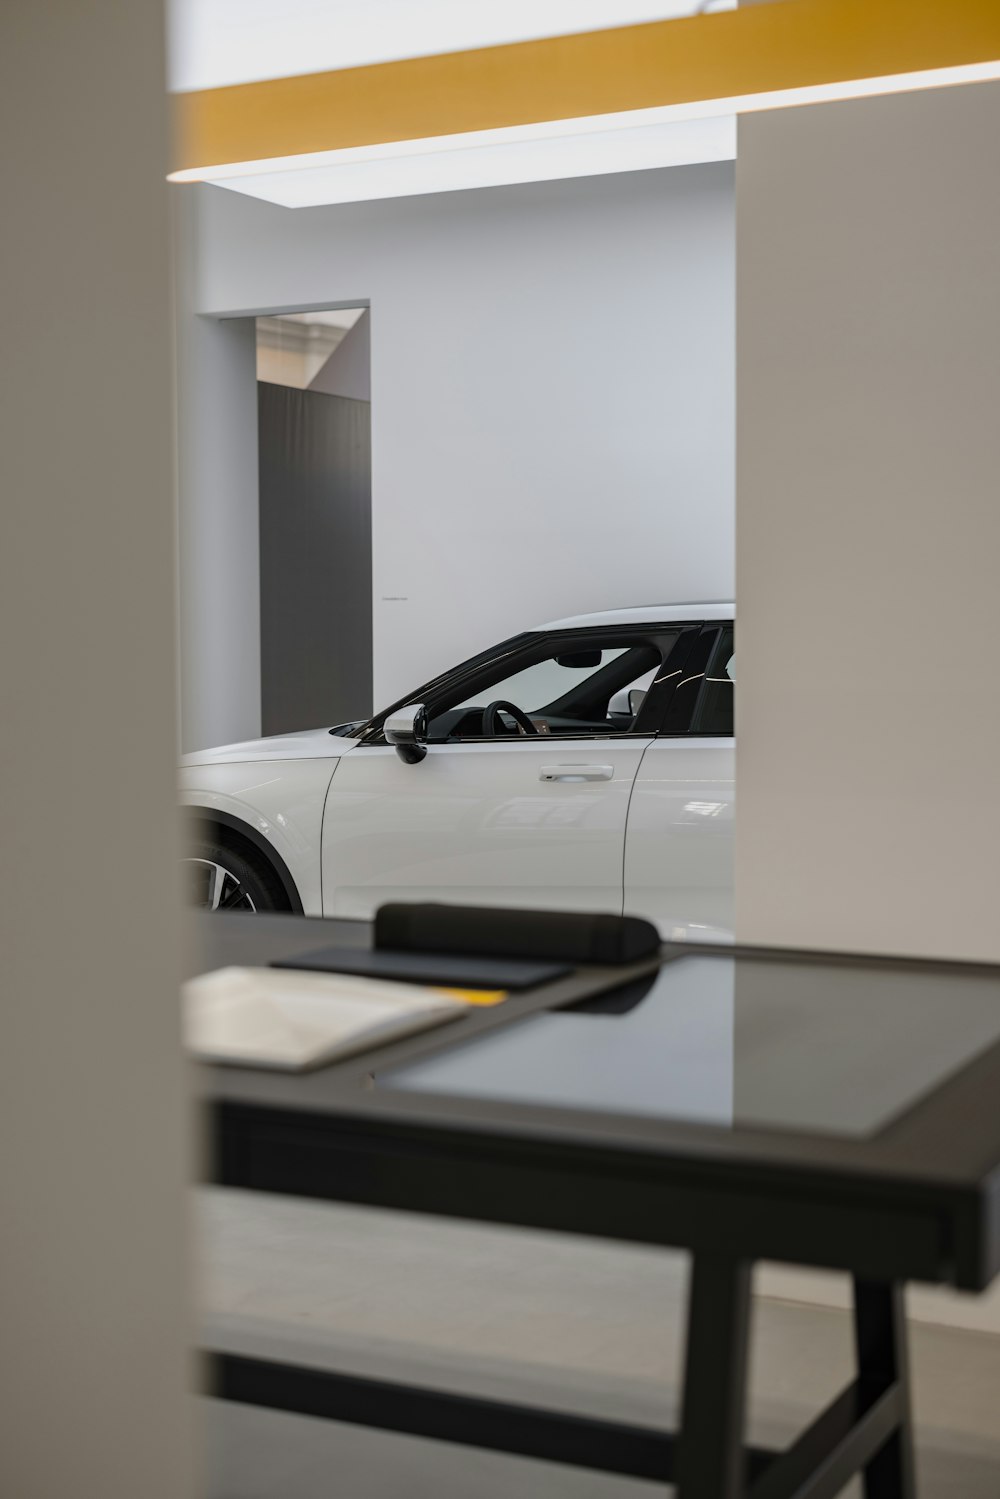 Ein weißes Auto parkt in einem Ausstellungsraum